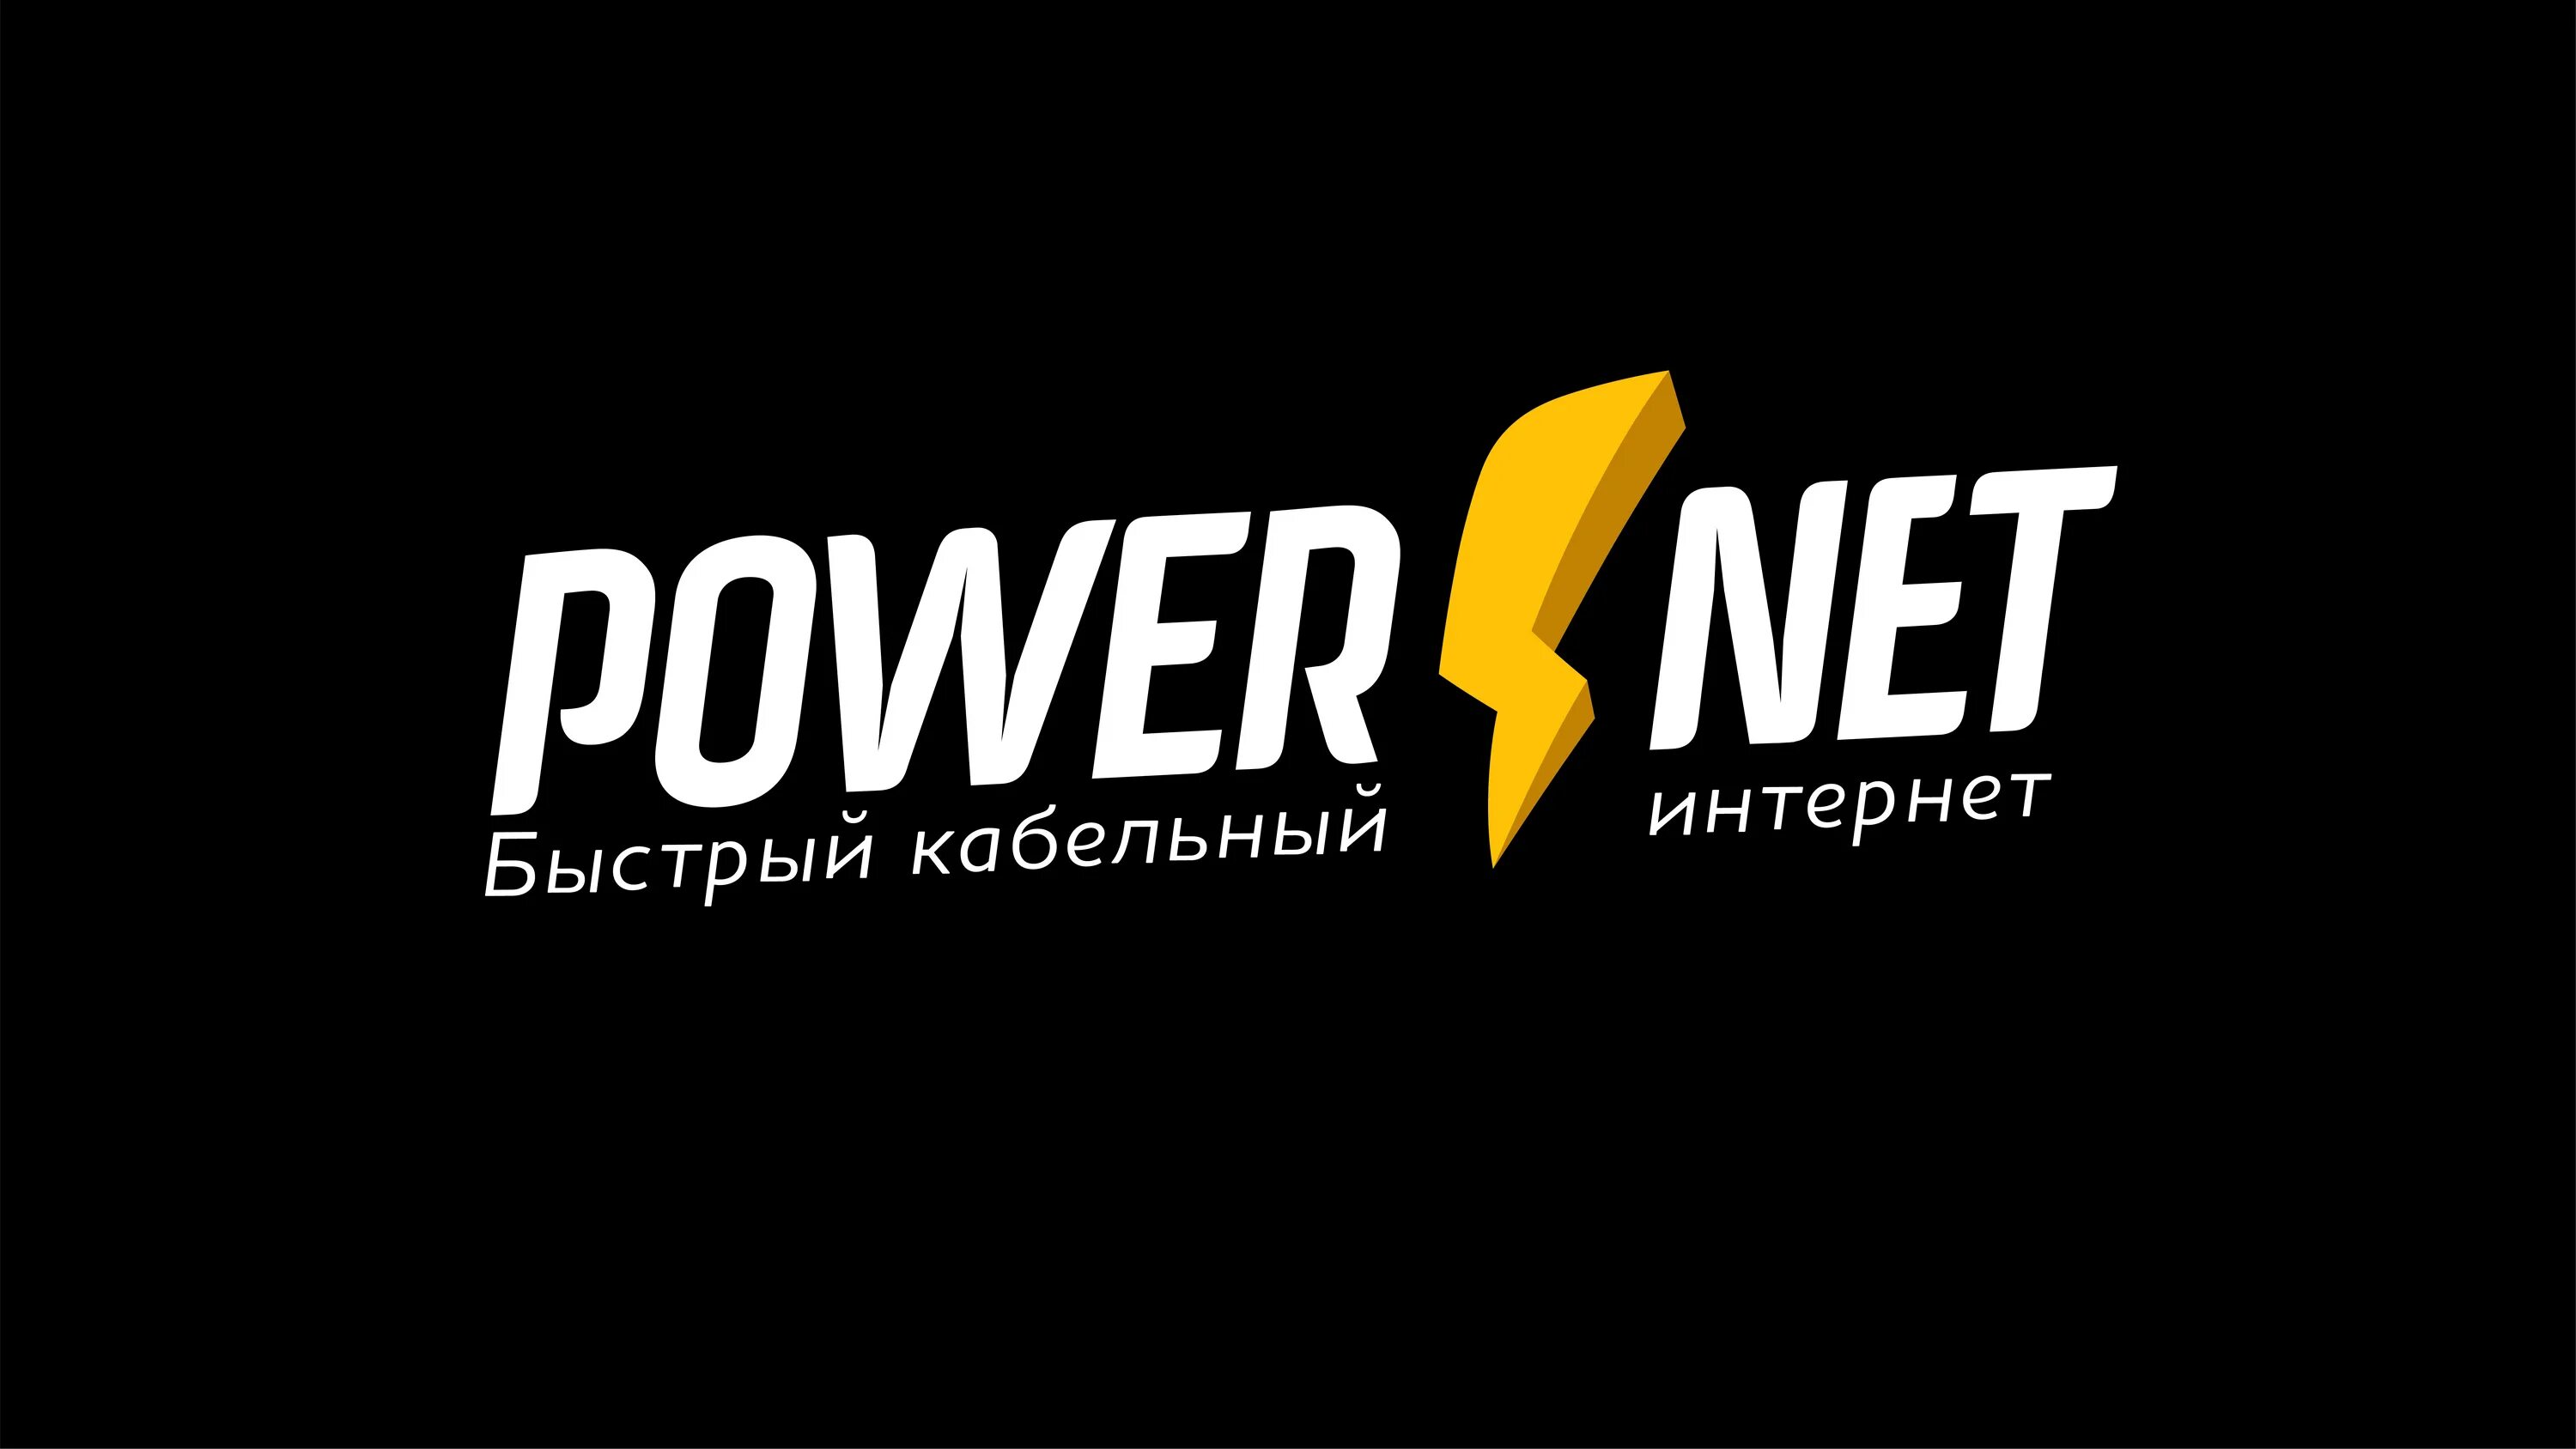 POWERNET. POWERNET лого. Повернет Волжский. POWERNET реклама. Power net